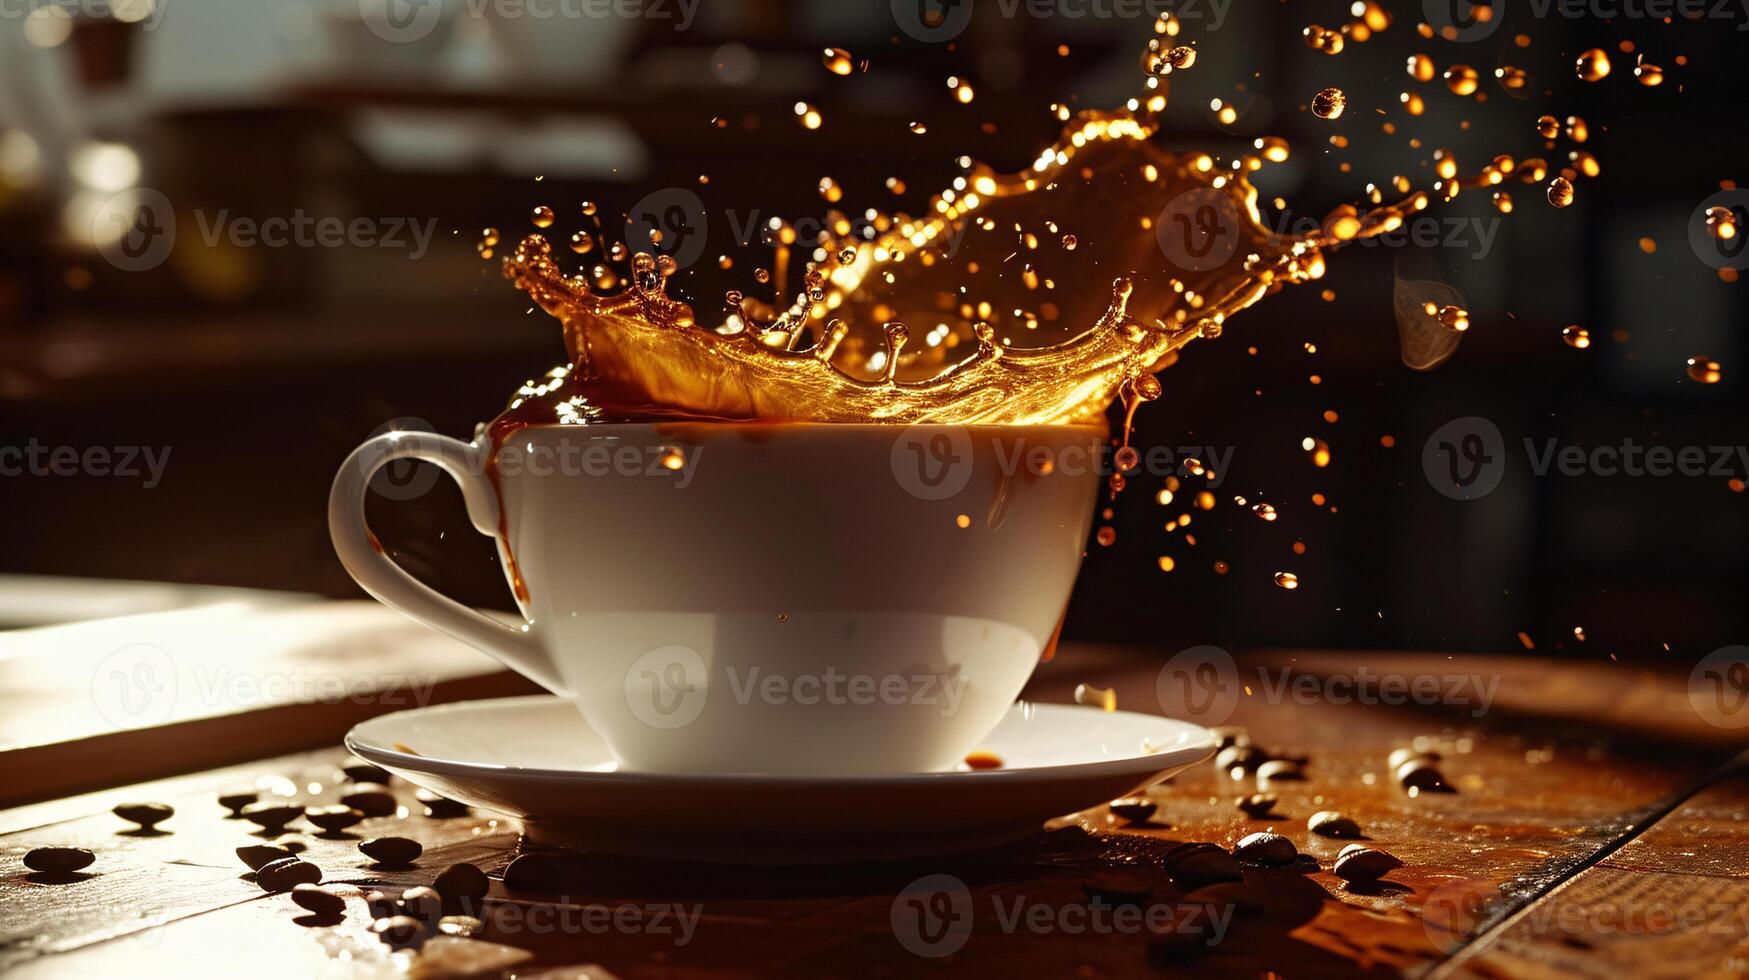 de vätska skönhet av häller kaffe in i en ren kopp, fångad i i luften foto